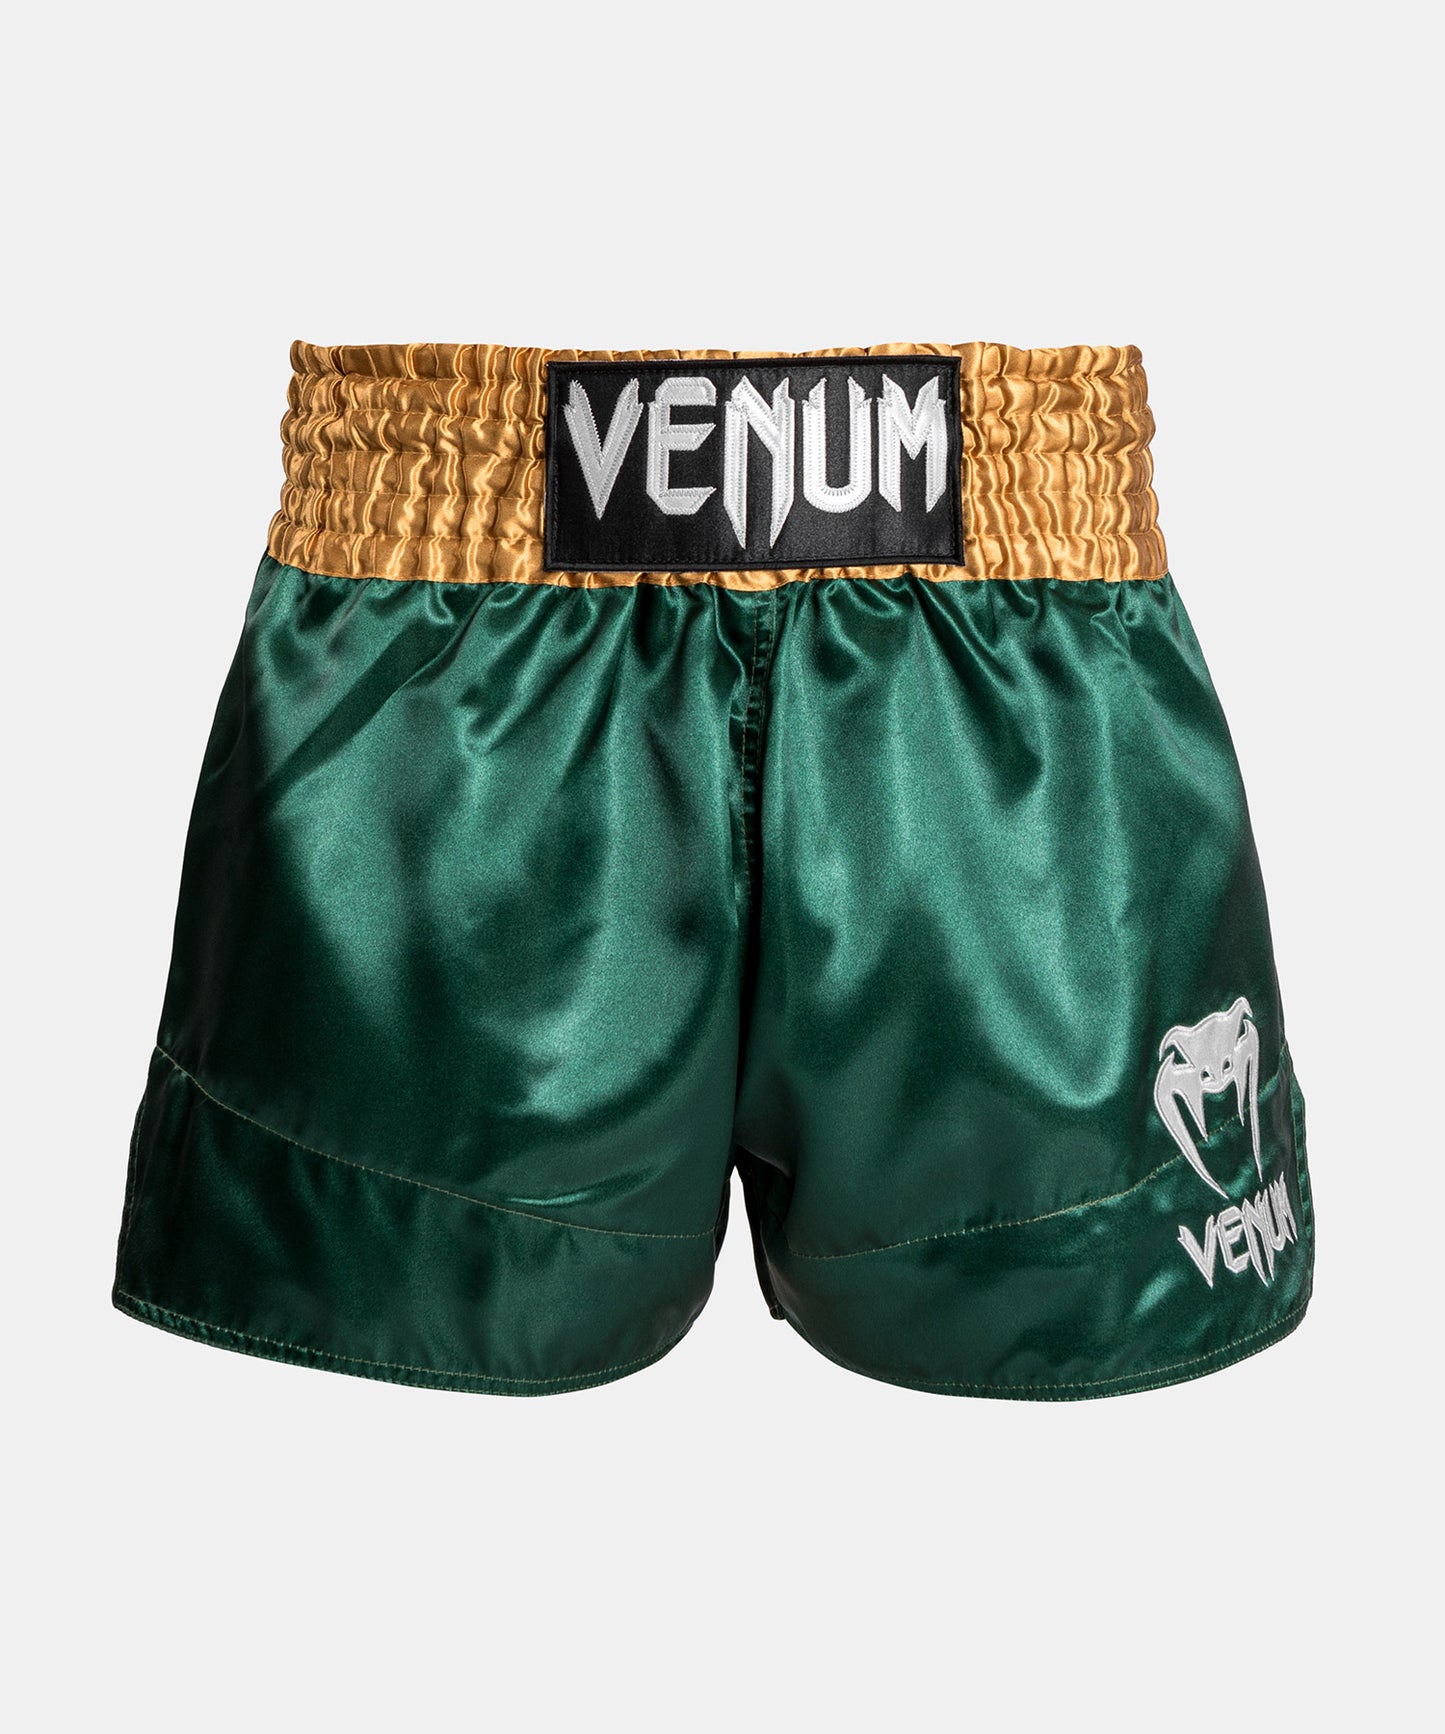 Short de MMA - Venum Asia